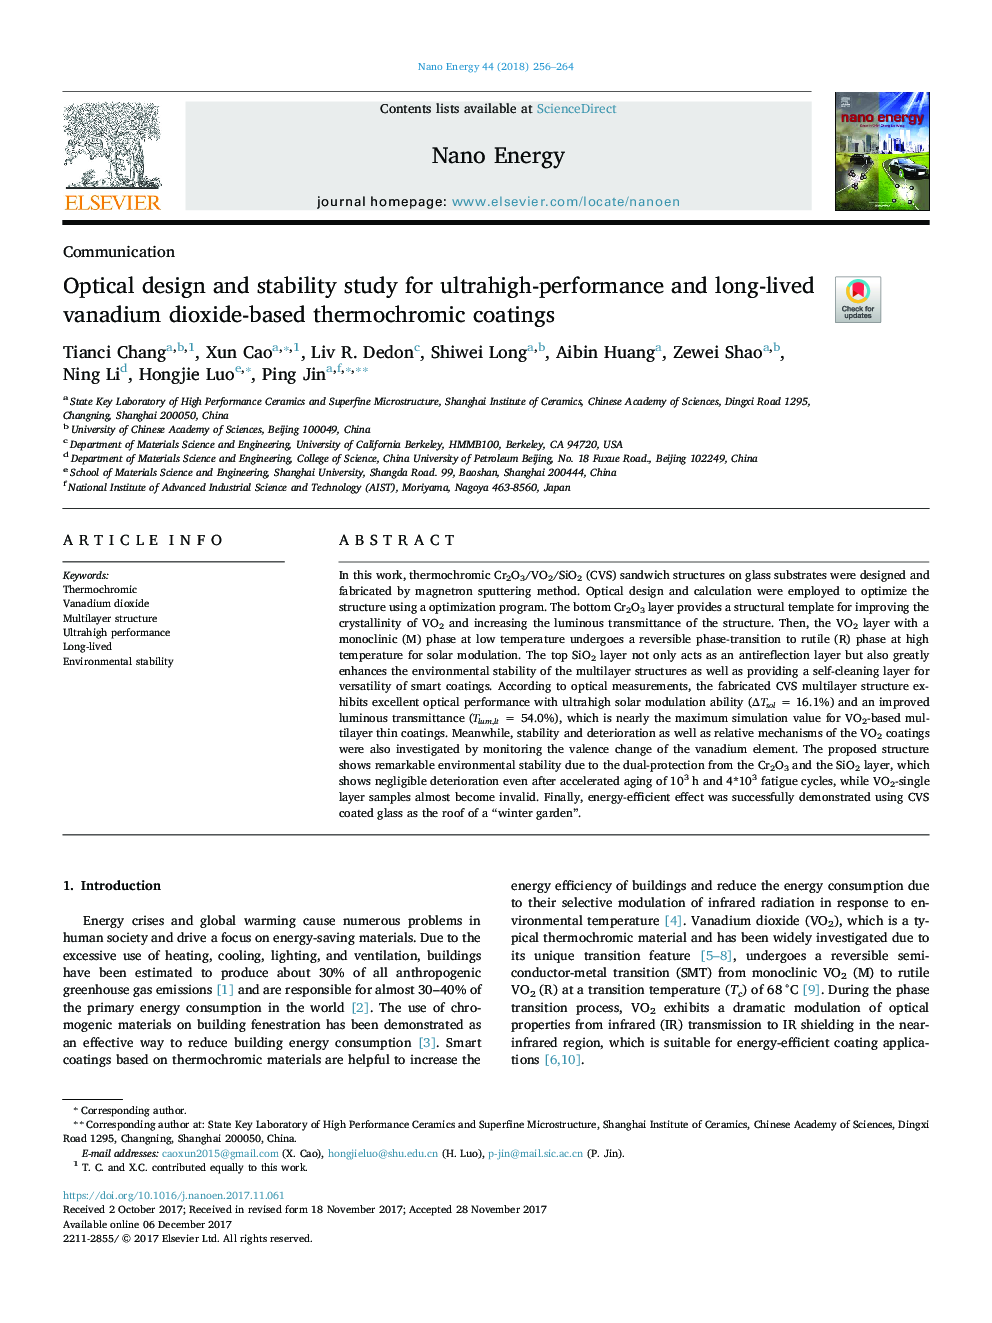 طراحی نوری و بررسی پایداری برای پوششهای ترموکرومیک مبتنی بر دی اکسید وانادویید با وضوح بالا و عملکرد بالا 